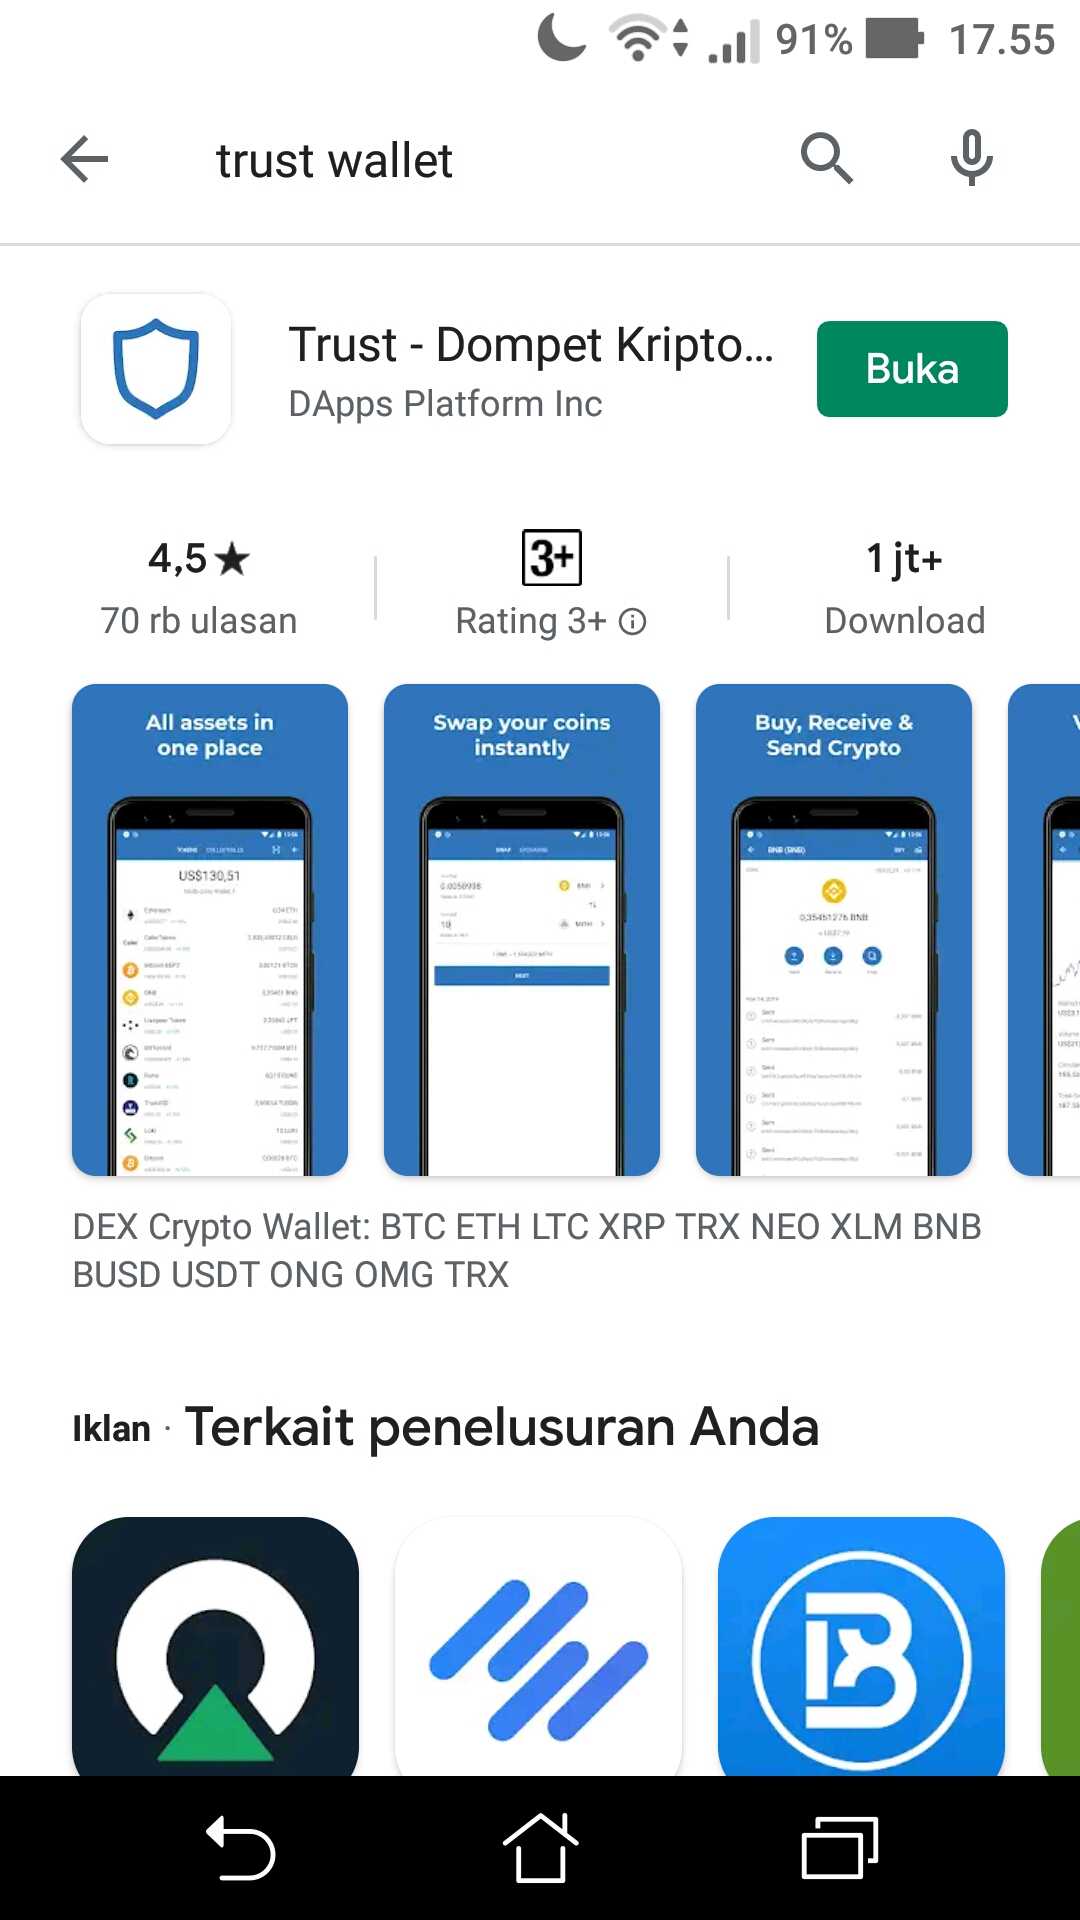 trust wallet app roadmap